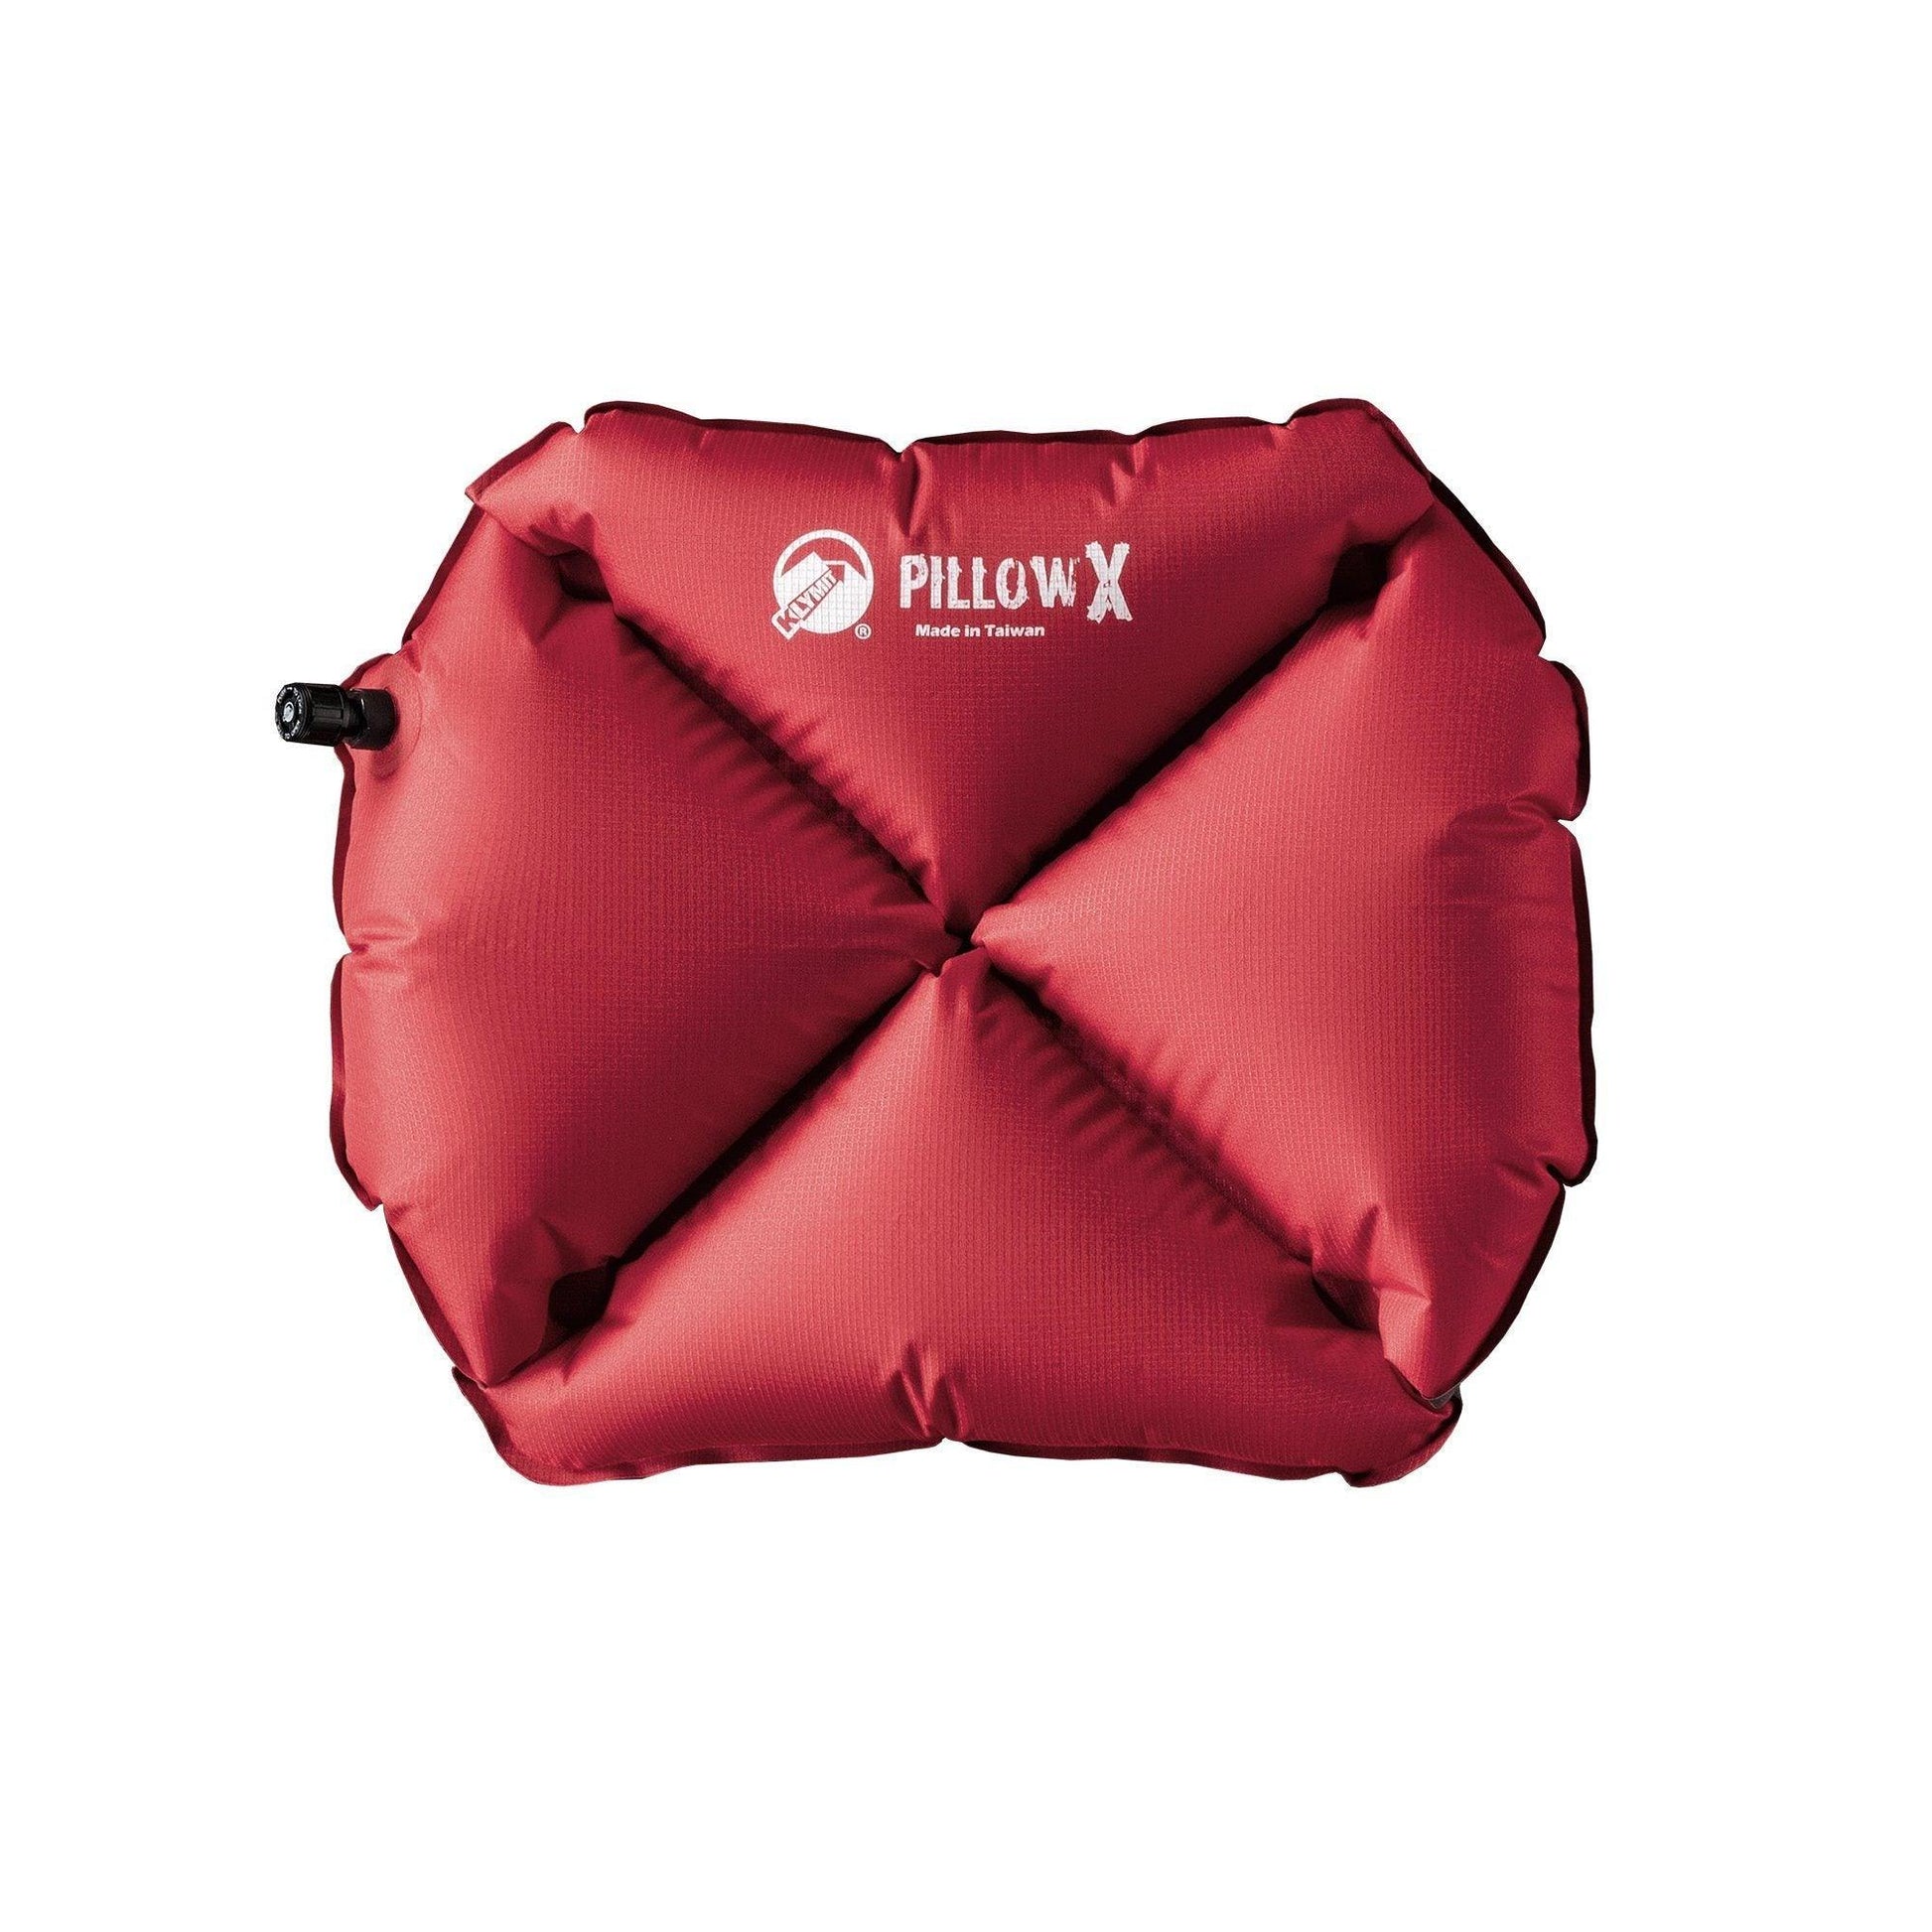 Klymit Pillow X (Liggunderlag etc) från Klymit. Röd / Grå | TacNGear - Utrustning för polis och militär och outdoor.